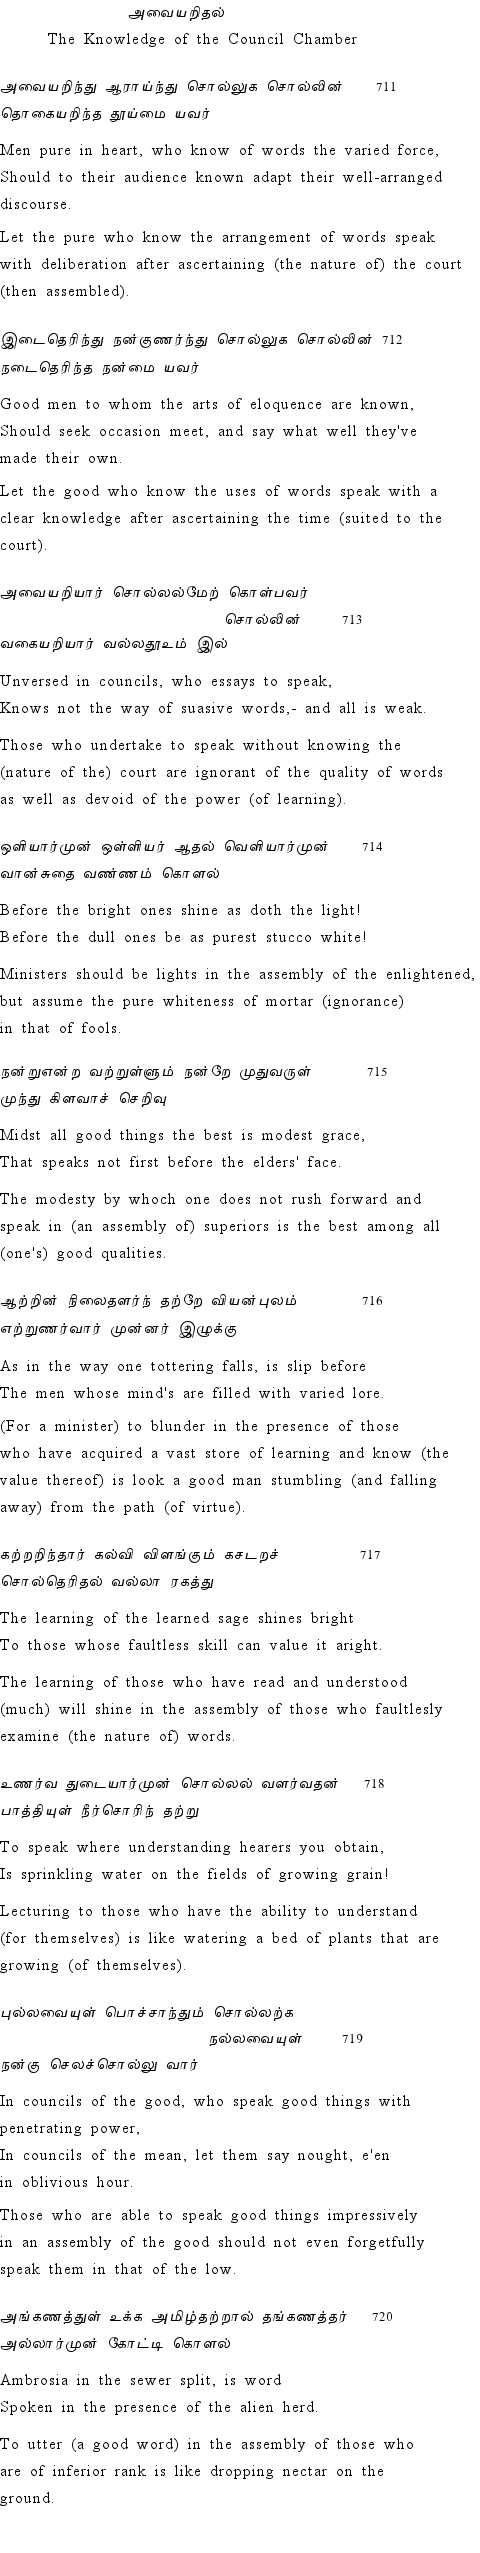 Text of Adhikaram 72